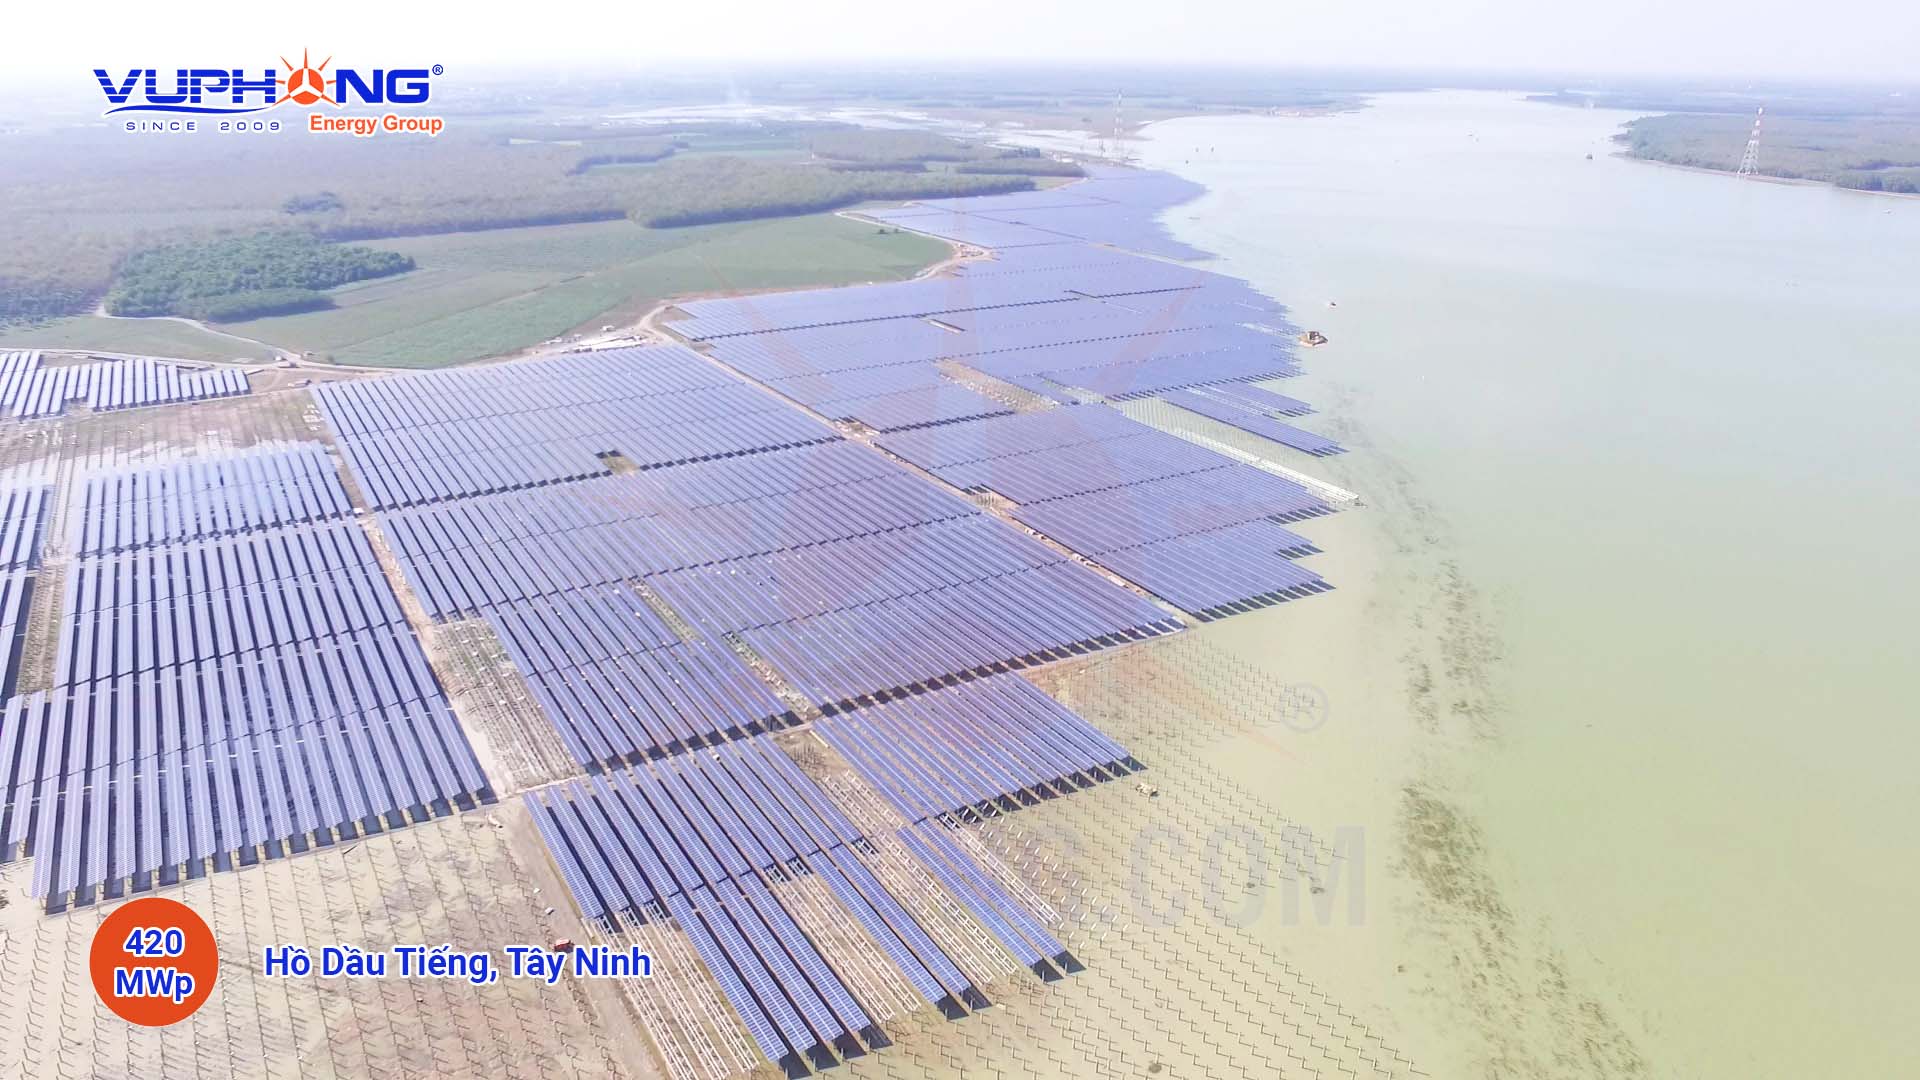 Nhà máy điện mặt trời Dầu Tiếng 420MWp Hồ Dầu Tiếng, Tây Ninh - Công Ty Cổ Phần Vũ Phong Energy Group